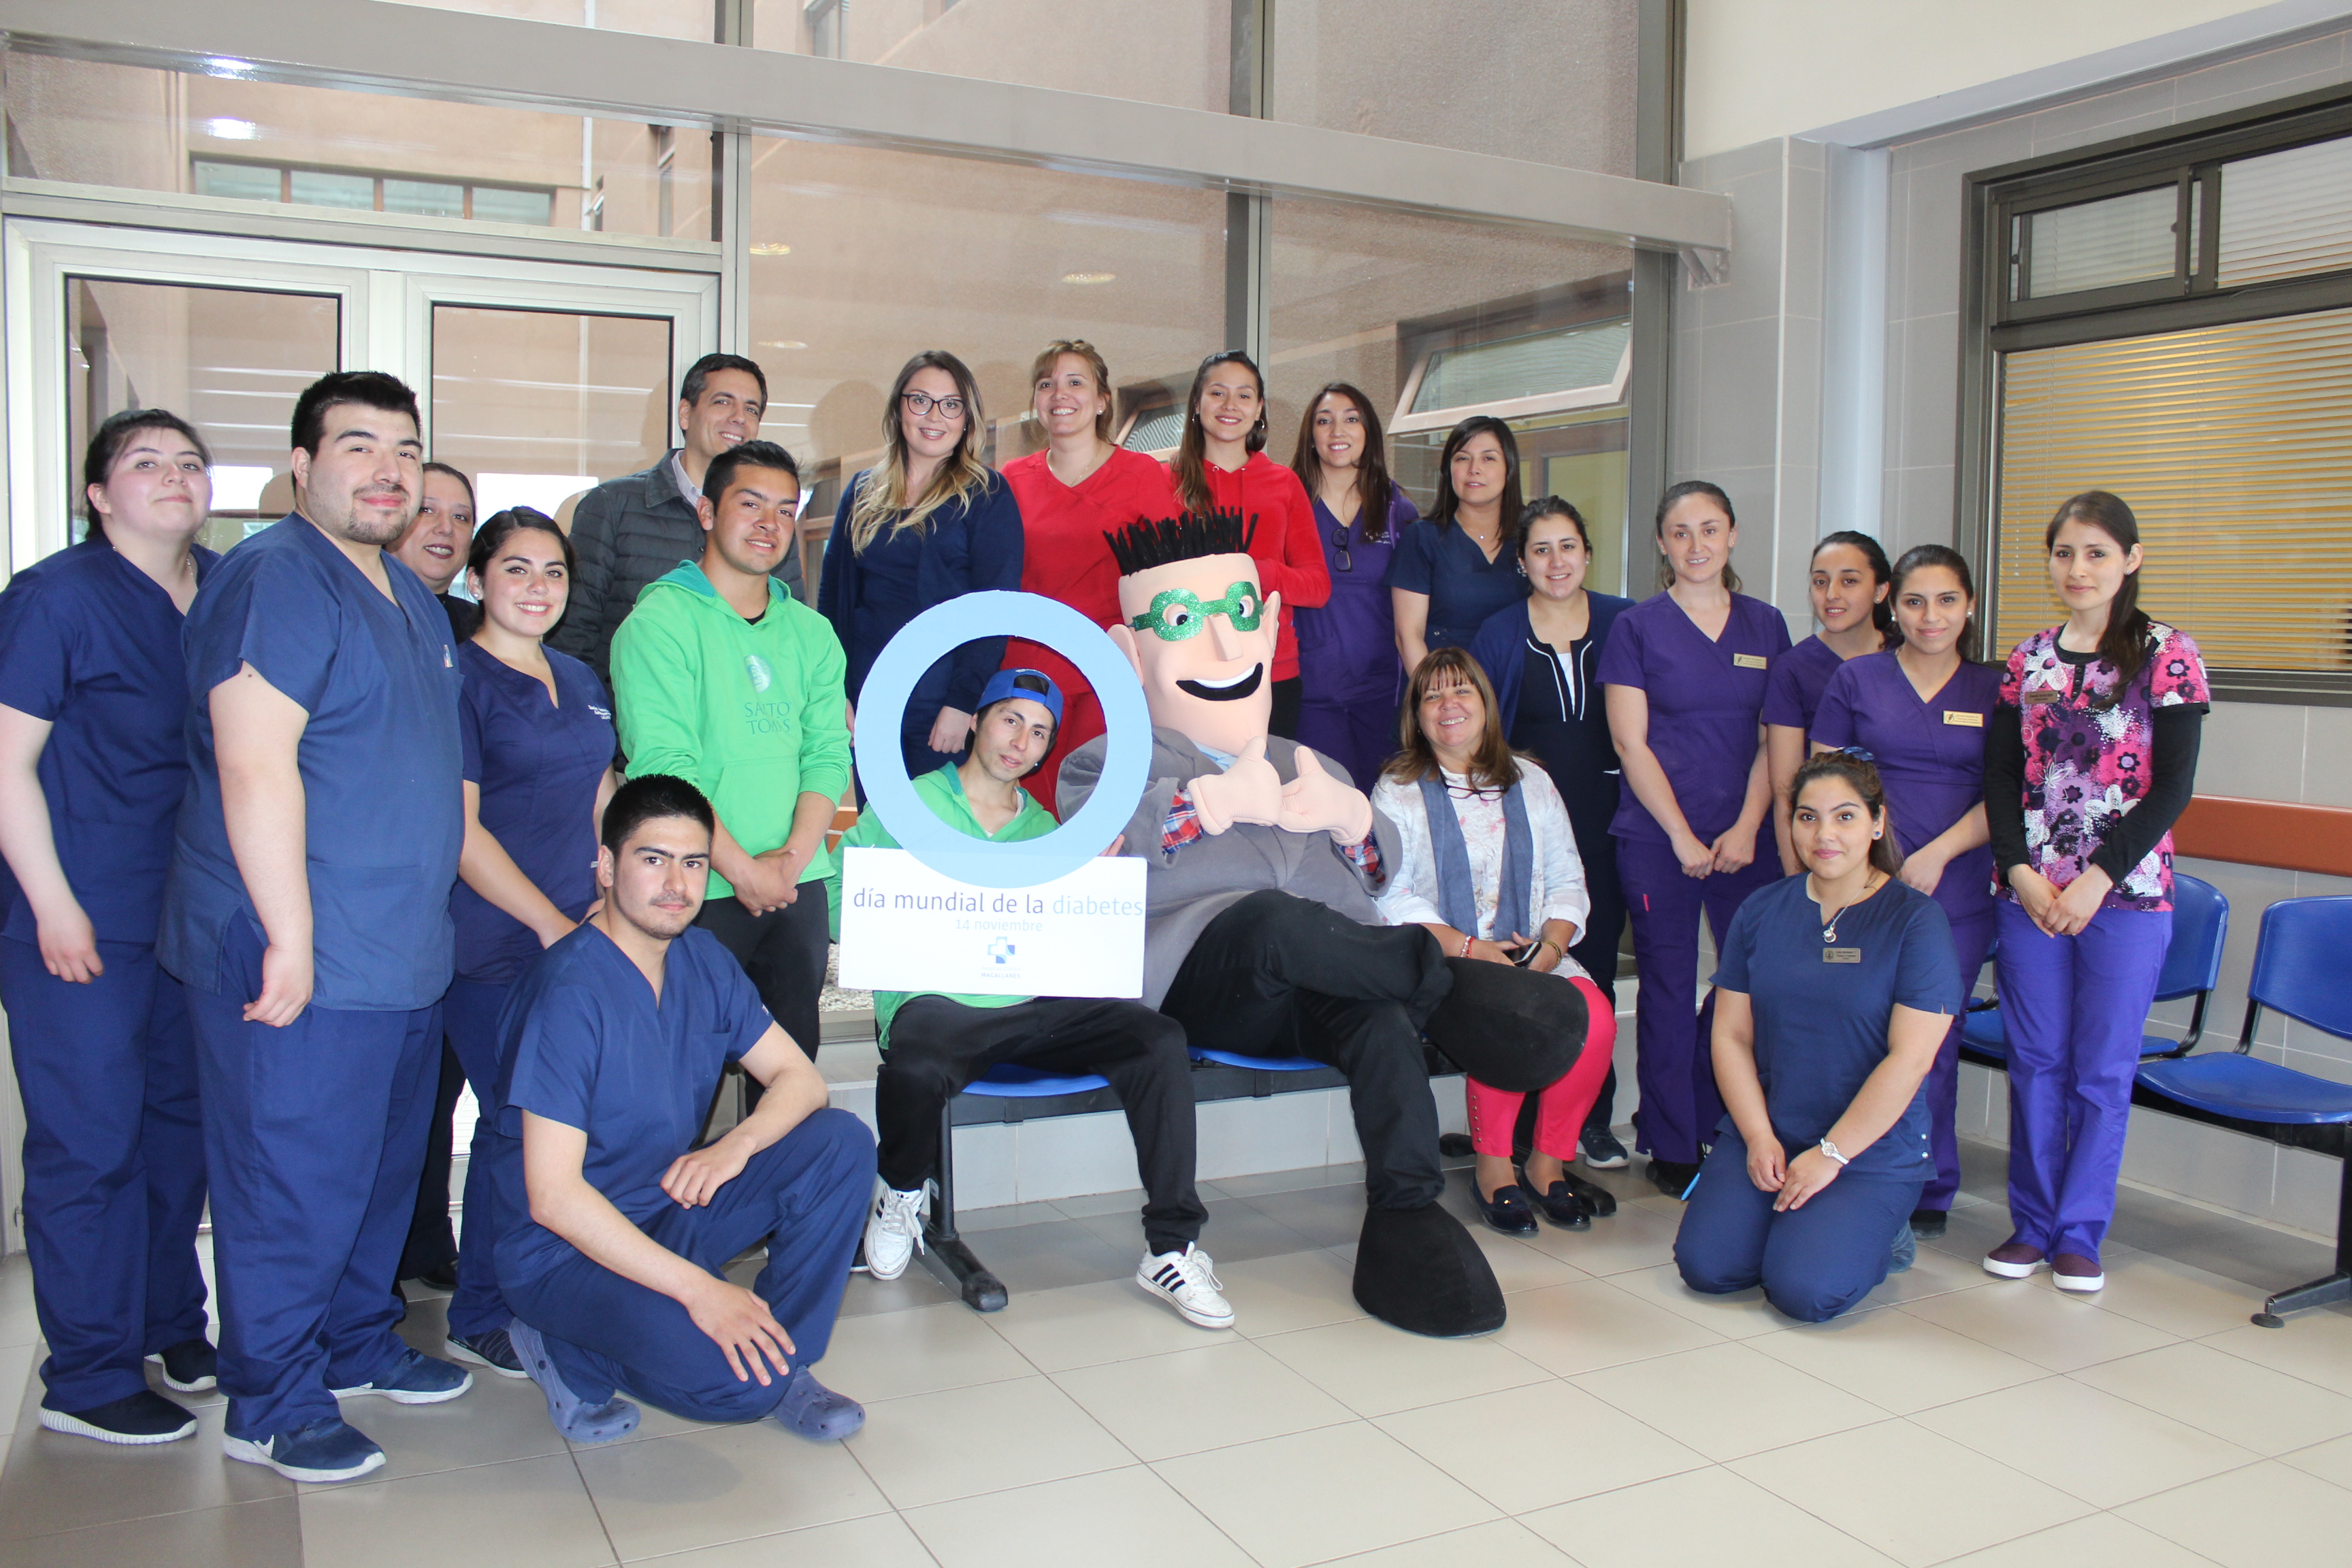 Con el mensaje de prevención y autocuidado, el Hospital Clínico Magallanes celebró el Día Mundial de la Diabetes